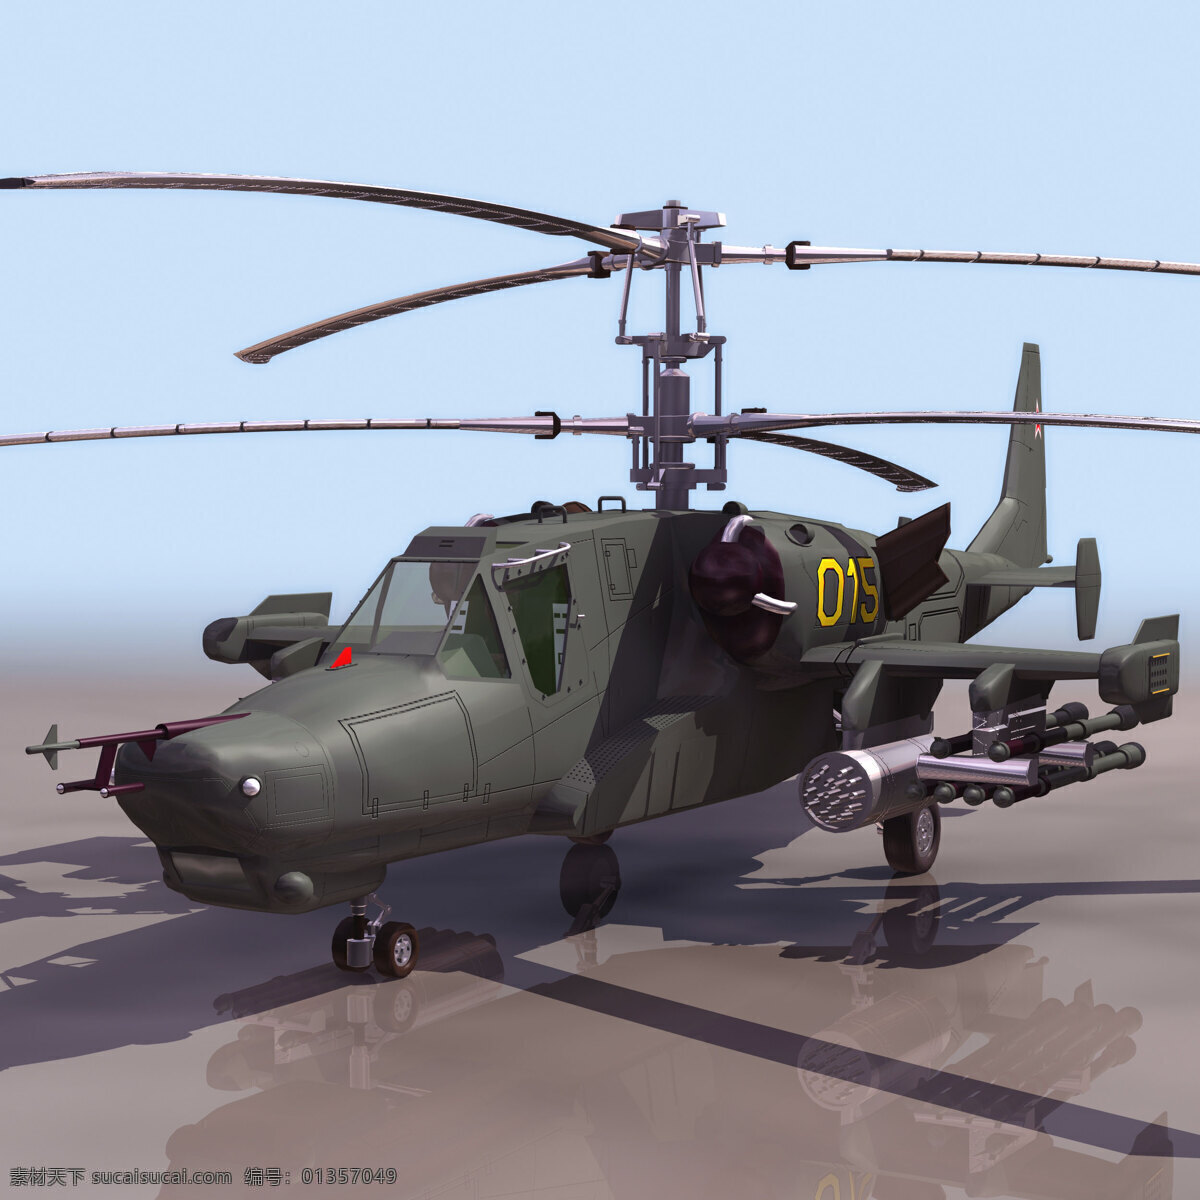 直升机 模型 hokum 军事模型 直升机模型 空军武器库 3d模型素材 其他3d模型